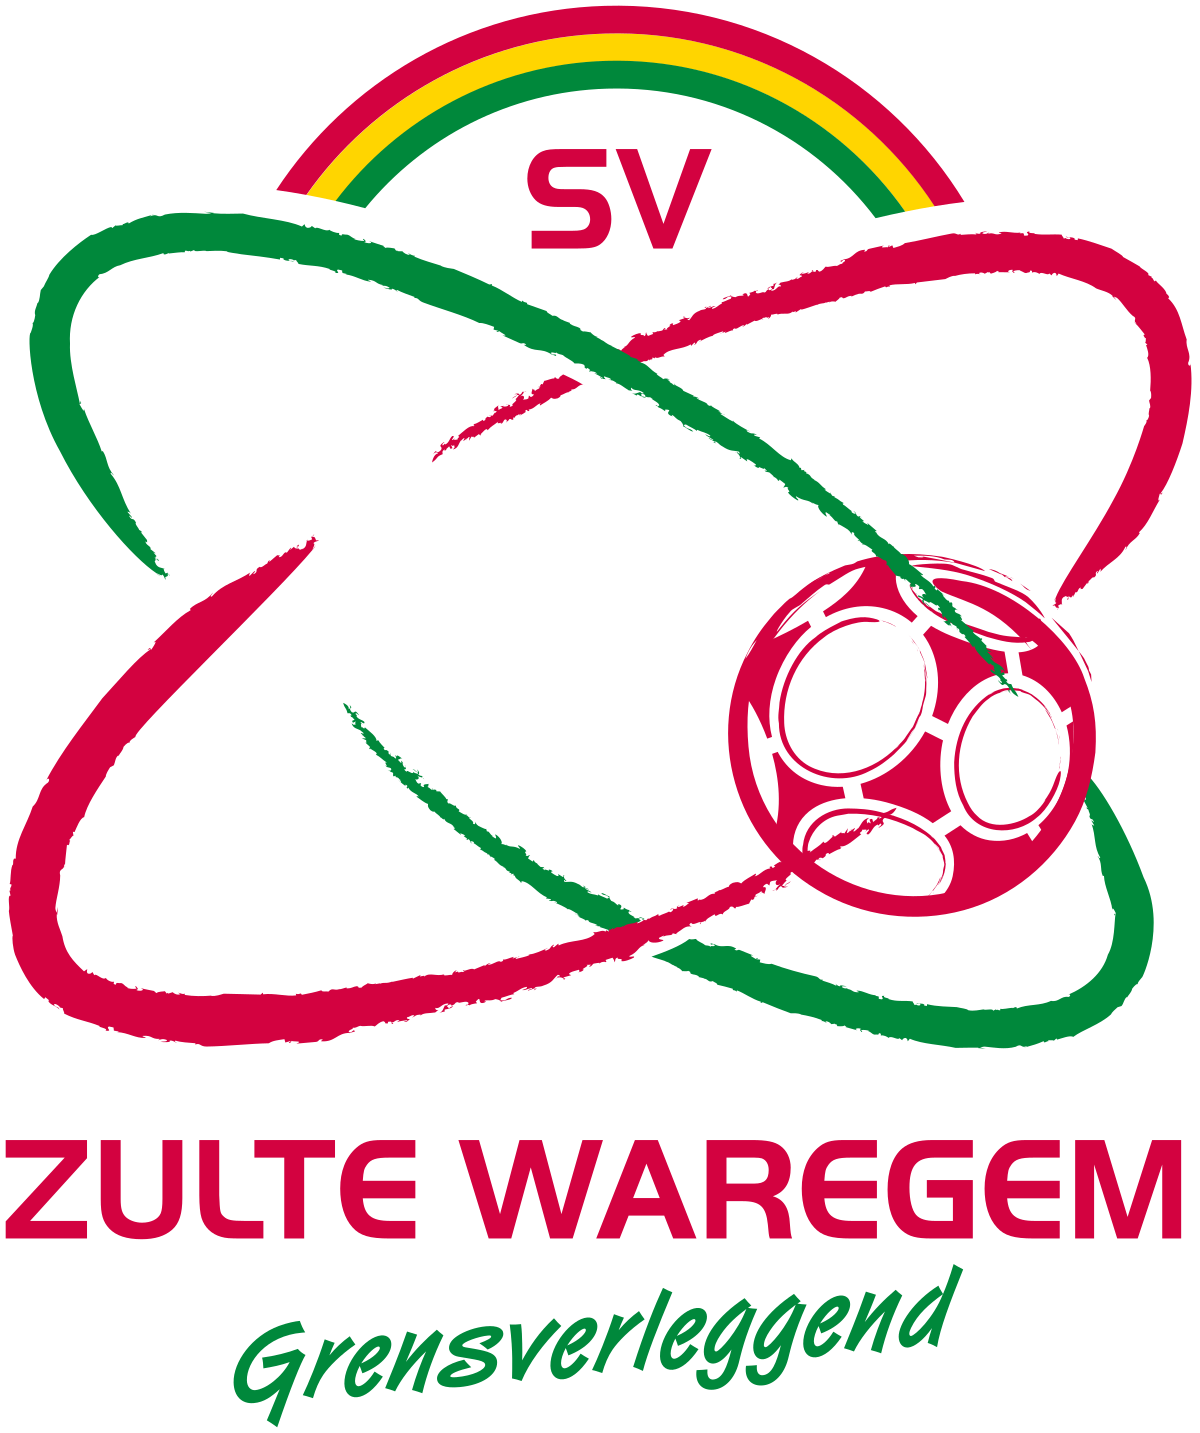 Zulte-Waregem W logo